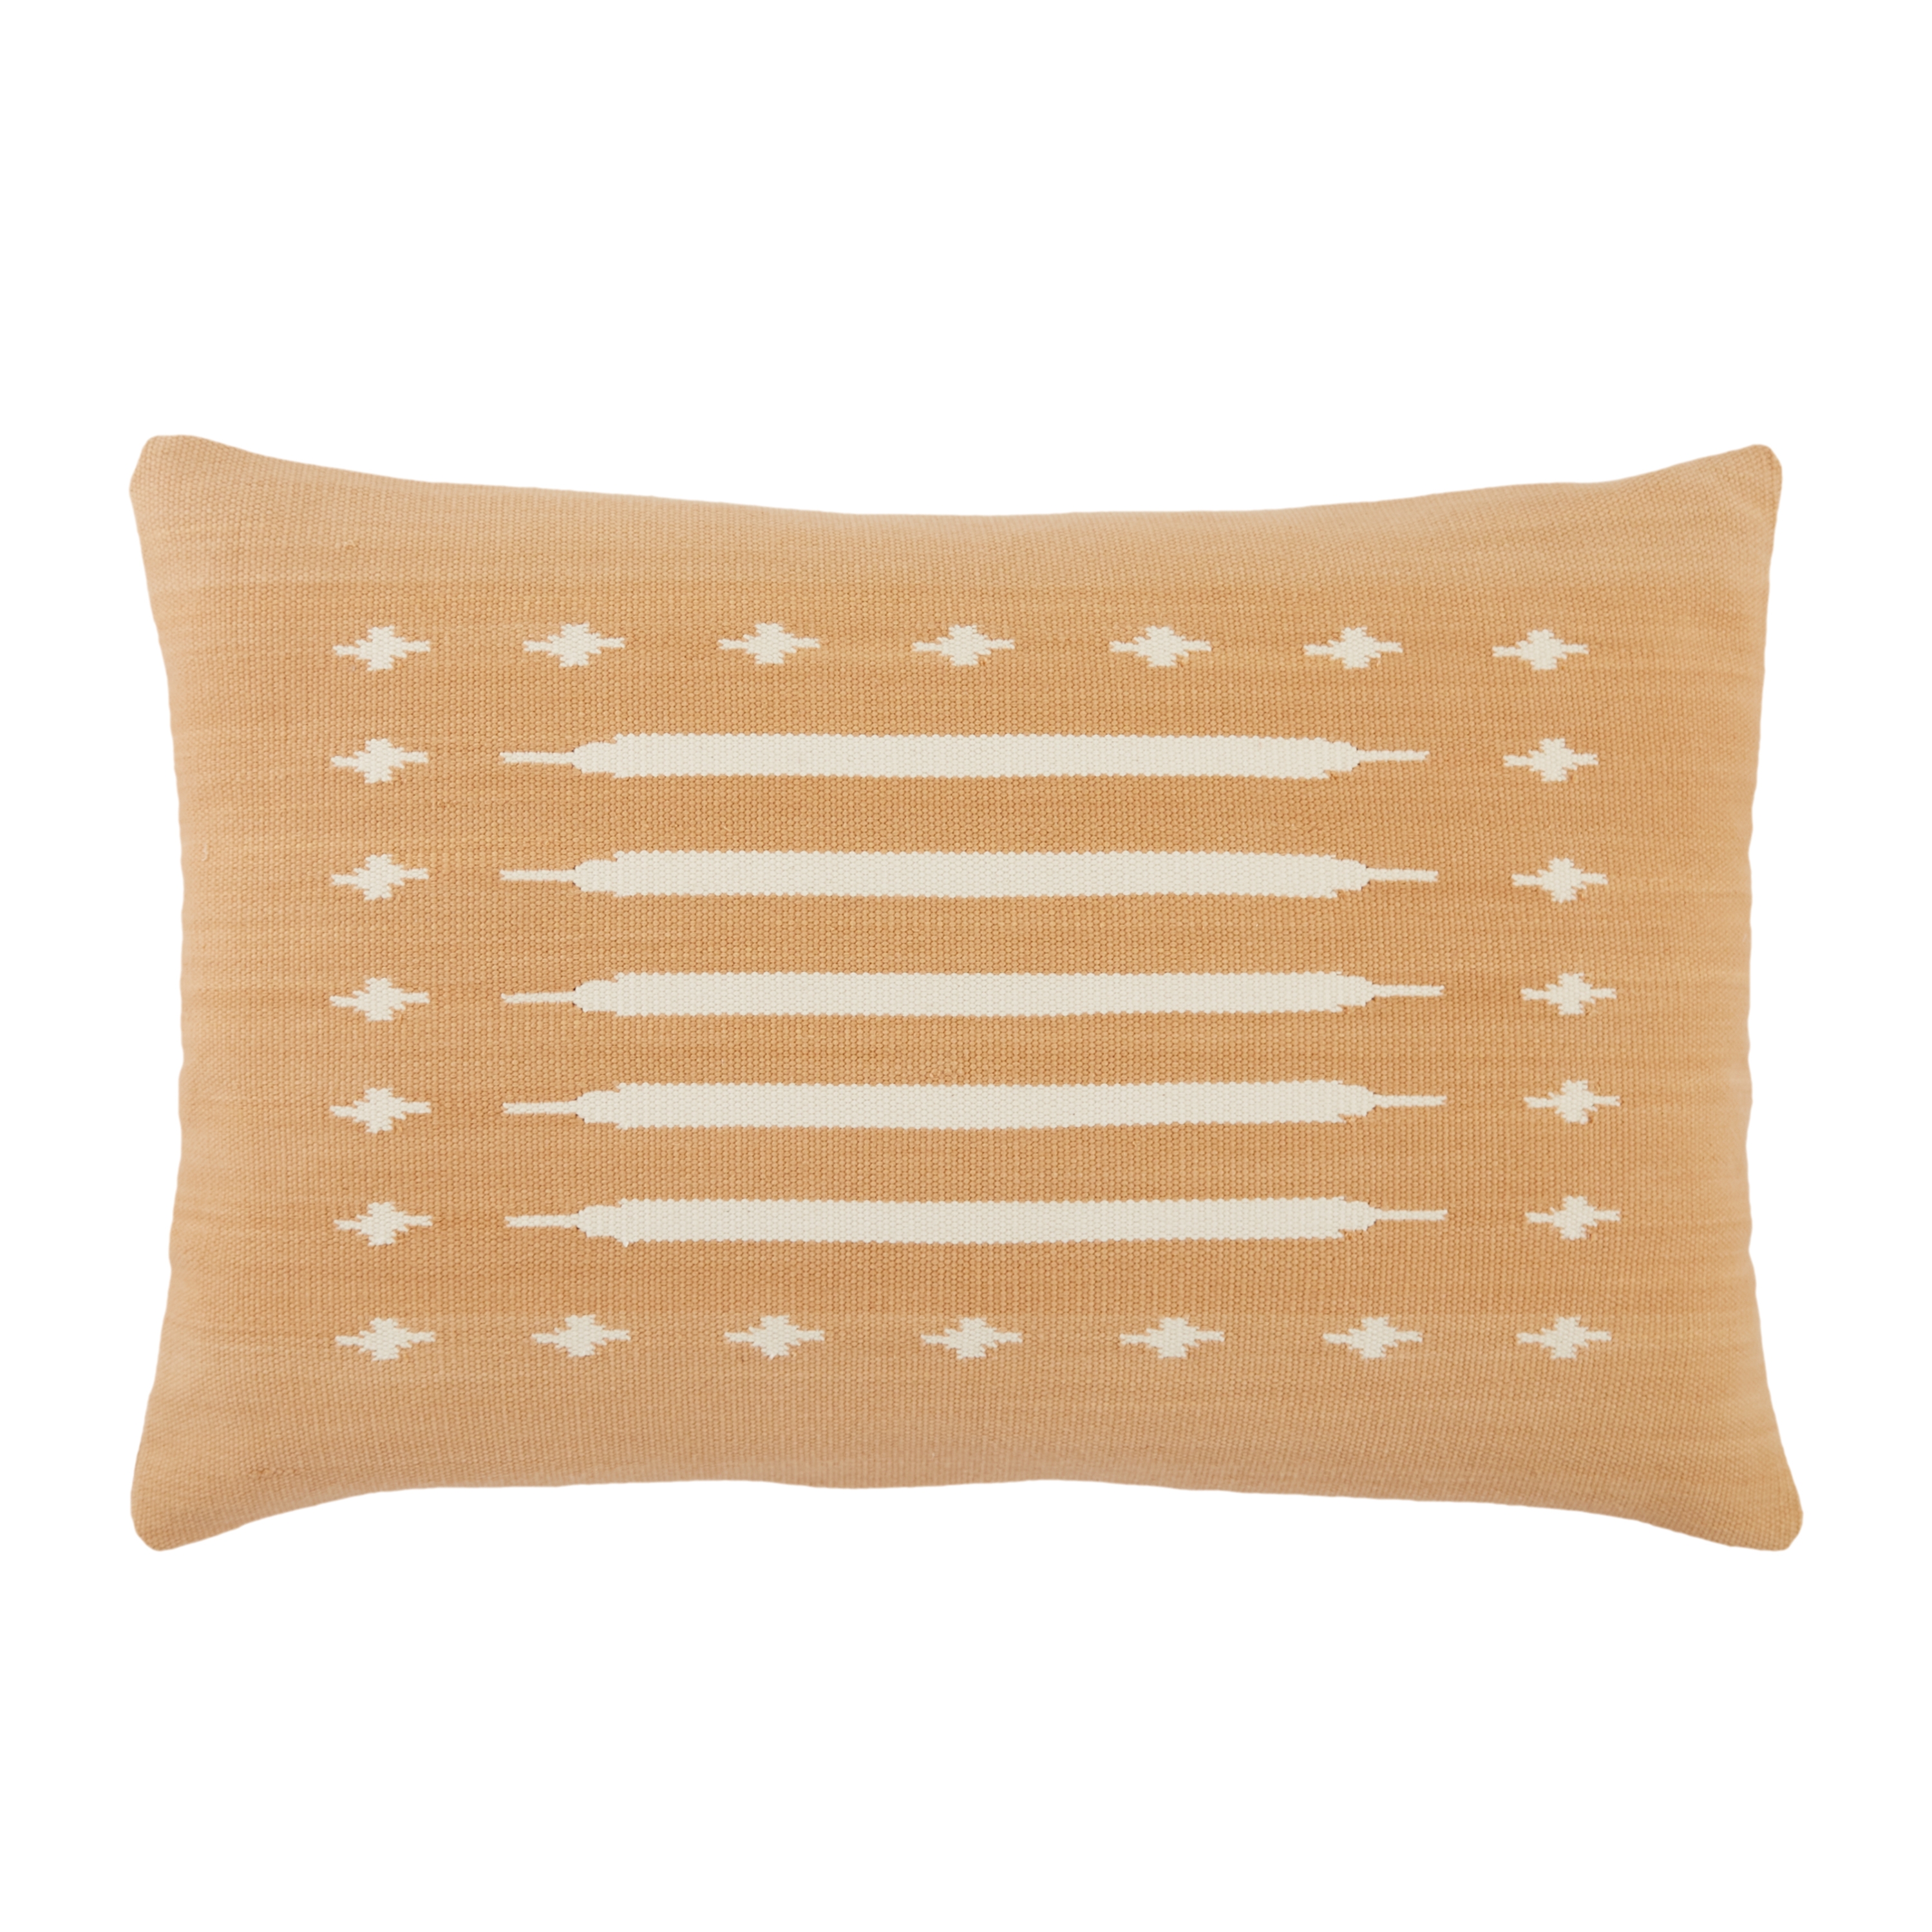 Design (US) Light Tan 16"X24" Pillow - Image 0